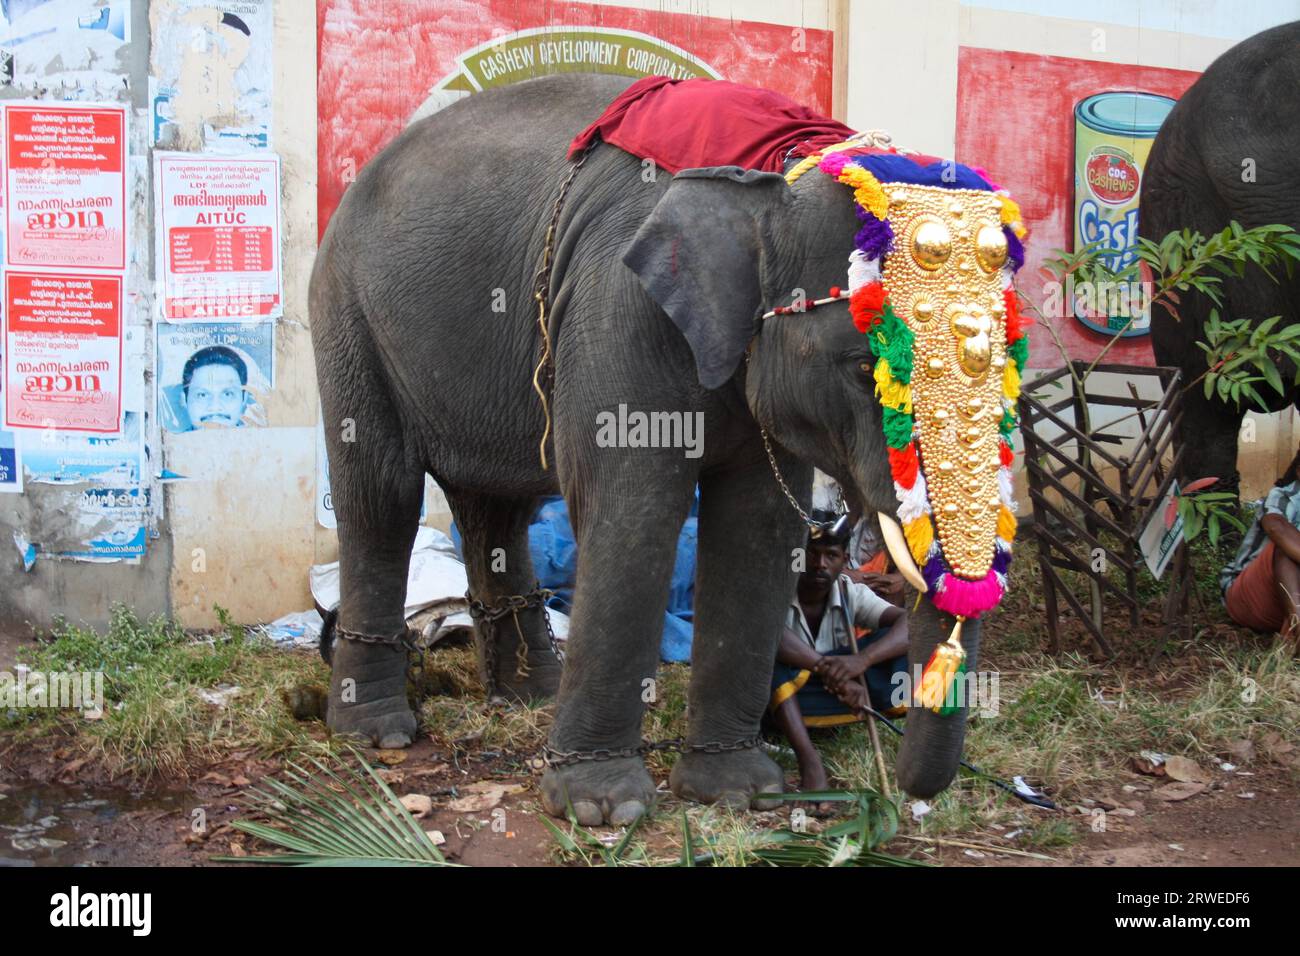 Varkala, India, 4 febbraio 2011: Elefanti decorati e persone in una tradizionale parata di elefanti Foto Stock